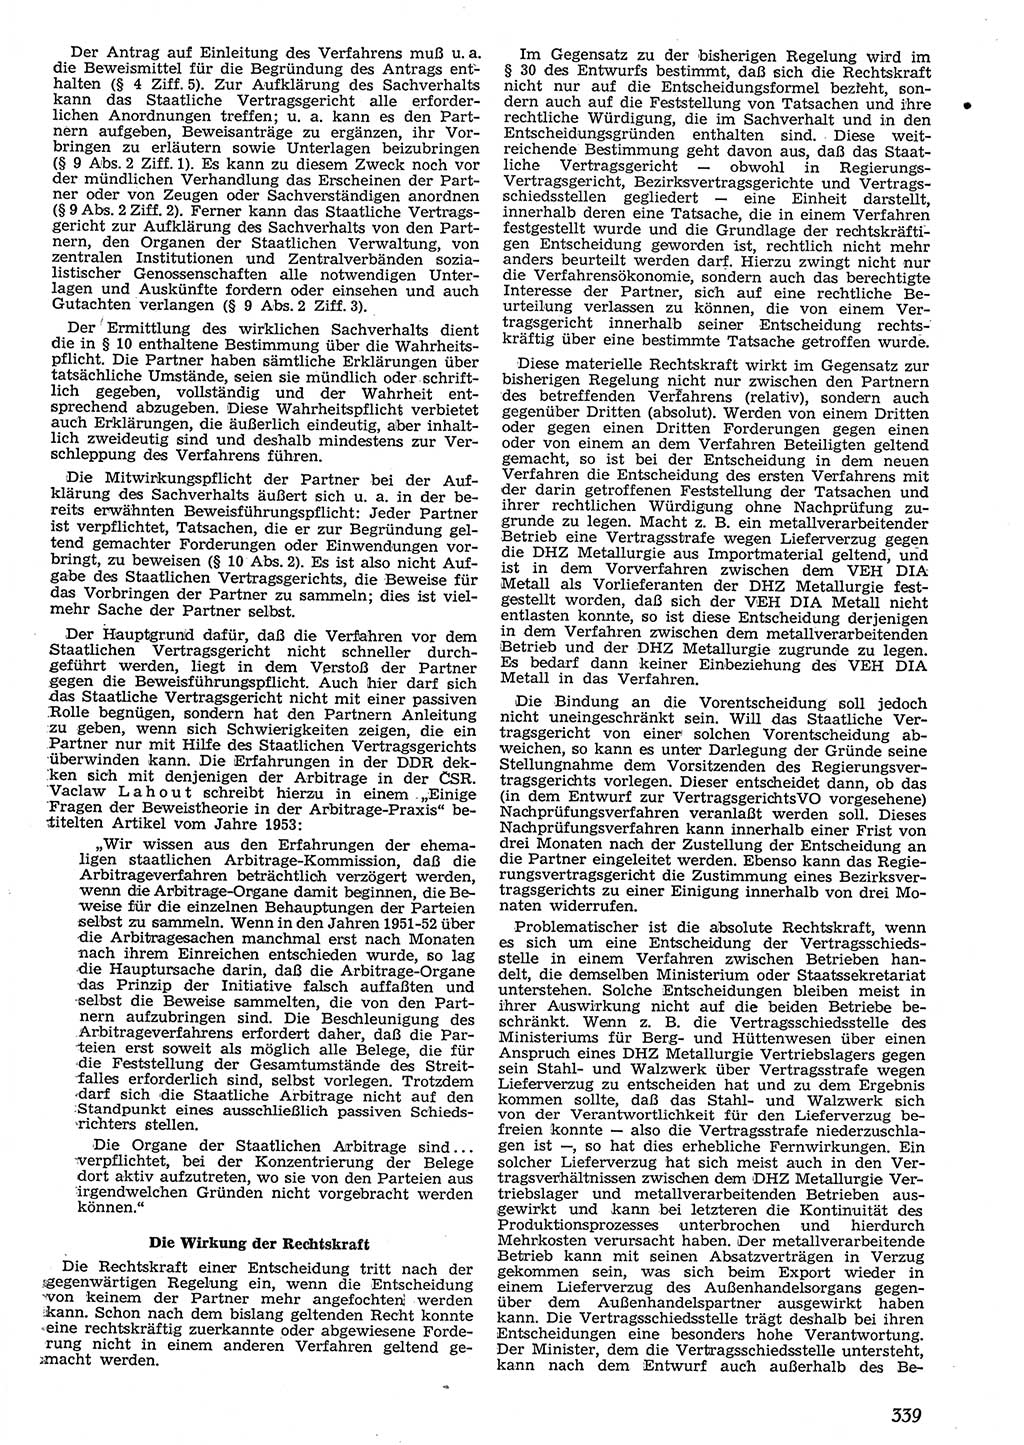 Neue Justiz (NJ), Zeitschrift für Recht und Rechtswissenschaft [Deutsche Demokratische Republik (DDR)], 10. Jahrgang 1956, Seite 339 (NJ DDR 1956, S. 339)